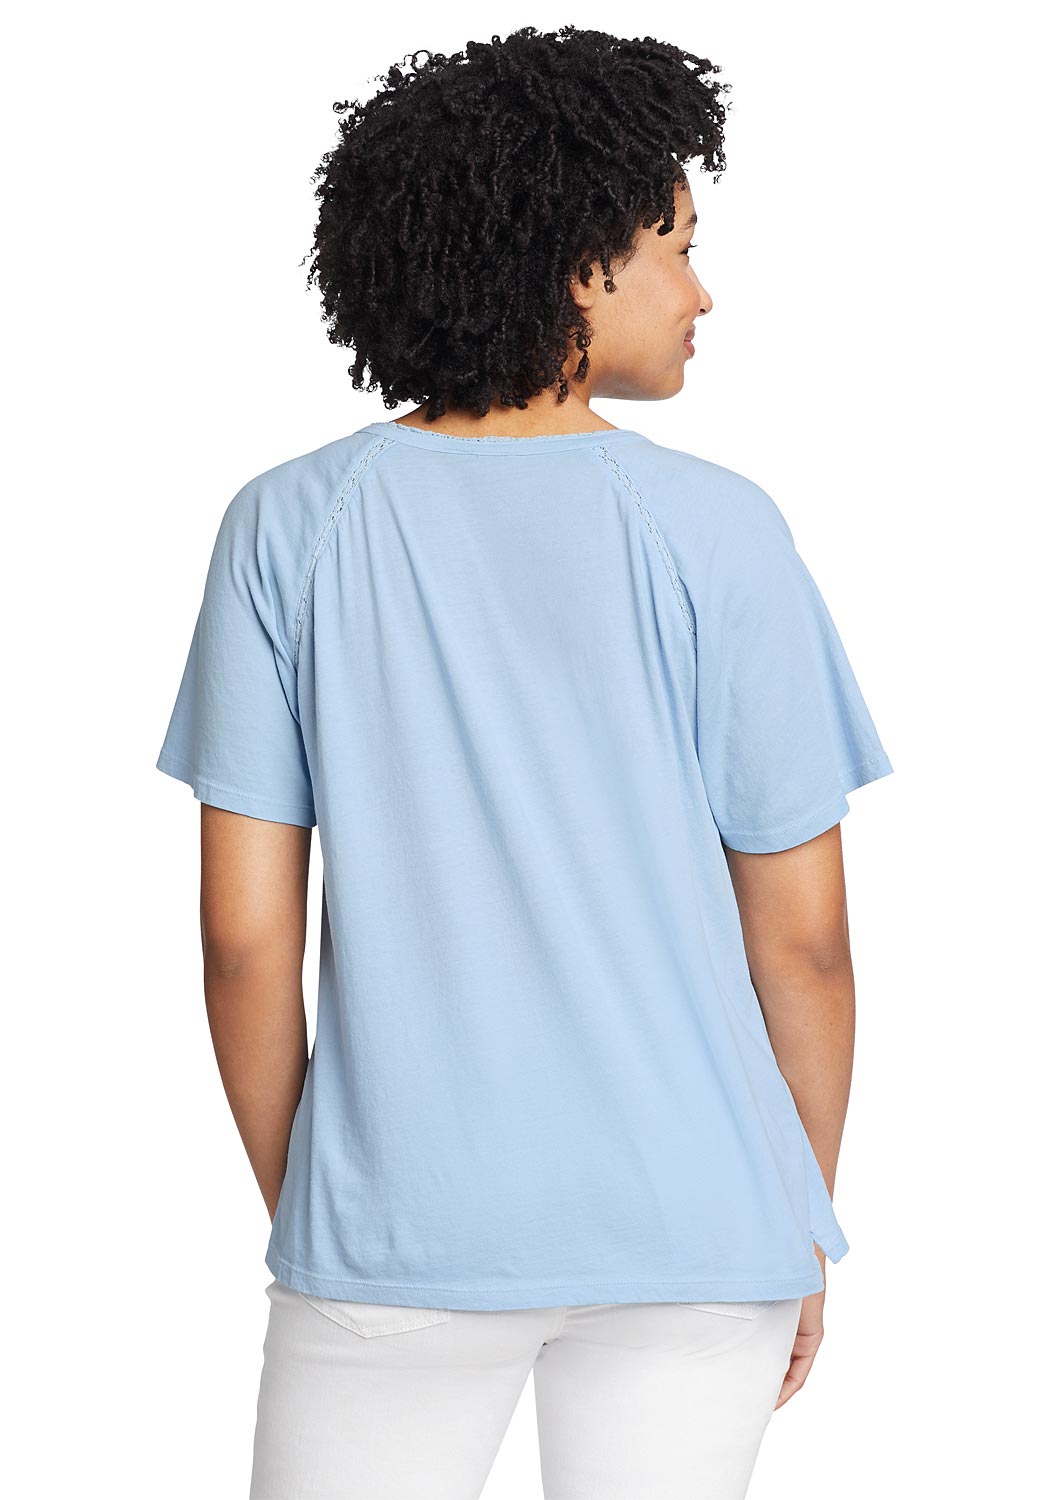 Artikel klicken und genauer betrachten! - Ophelia T-Shirt Damen Blau Gr. M Das T-Shirt mit Y-Ausschnitt besteht aus einem weicheren, garngefärbten Baumwoll-Jersey. Häkeleinsätze an den Raglanärmel-Nähten verleihen ihm ein feminines Detail. | im Online Shop kaufen